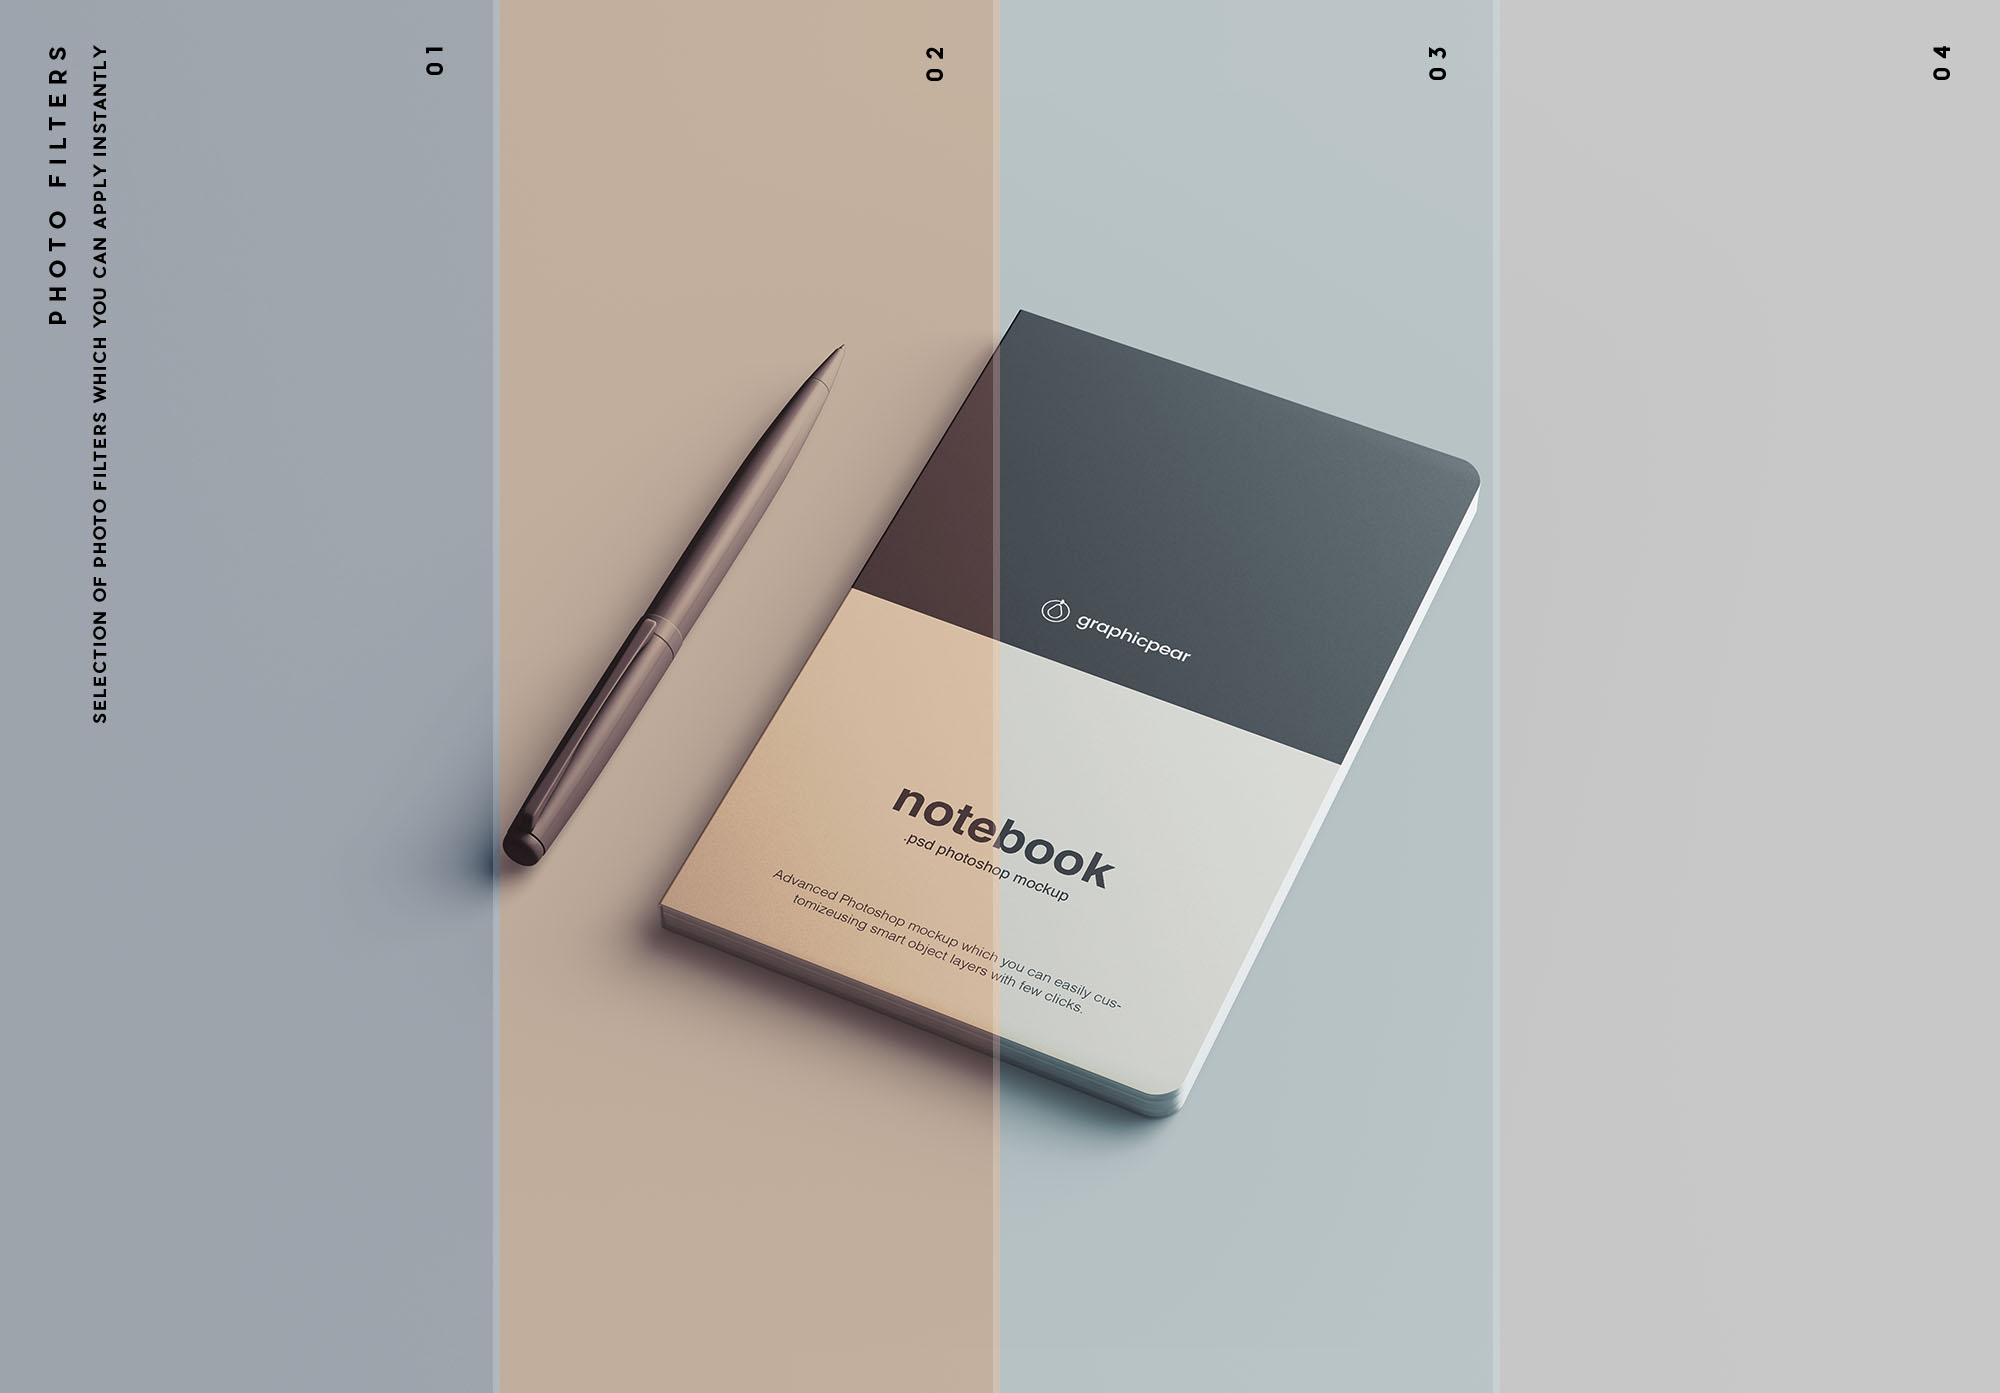 高级记事本封面设计效果图样机素材 Advanced Notebook Mockup插图(9)